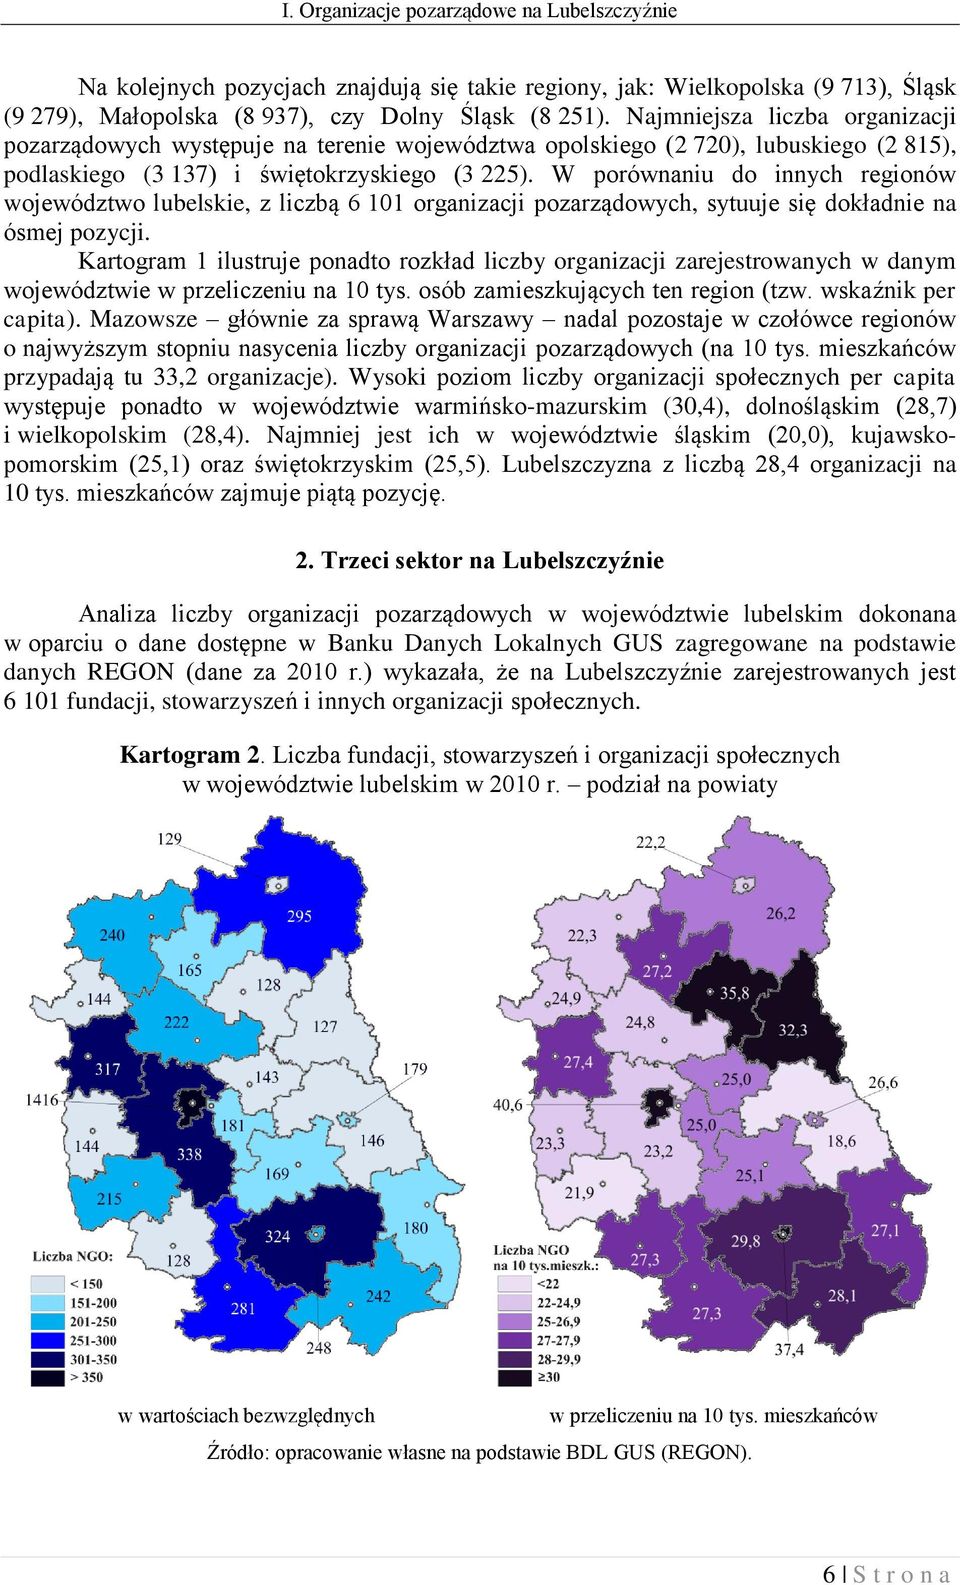 W porównaniu do innych regionów województwo lubelskie, z liczbą 6 101 organizacji pozarządowych, sytuuje się dokładnie na ósmej pozycji.